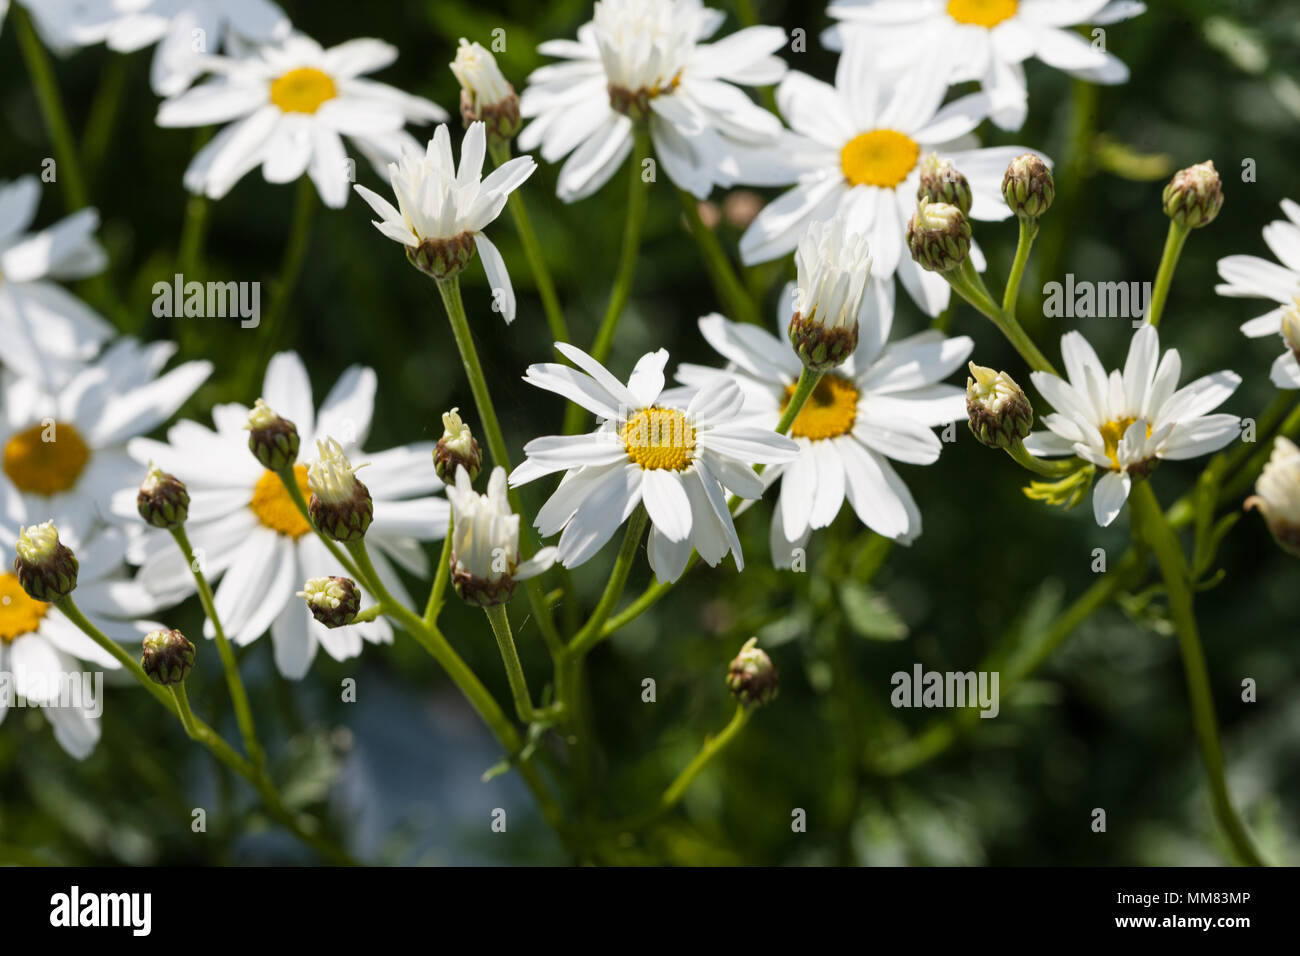 Corymbflower Tansy, Renfenekrage (Tanacetum corymbosum) Stock Photo